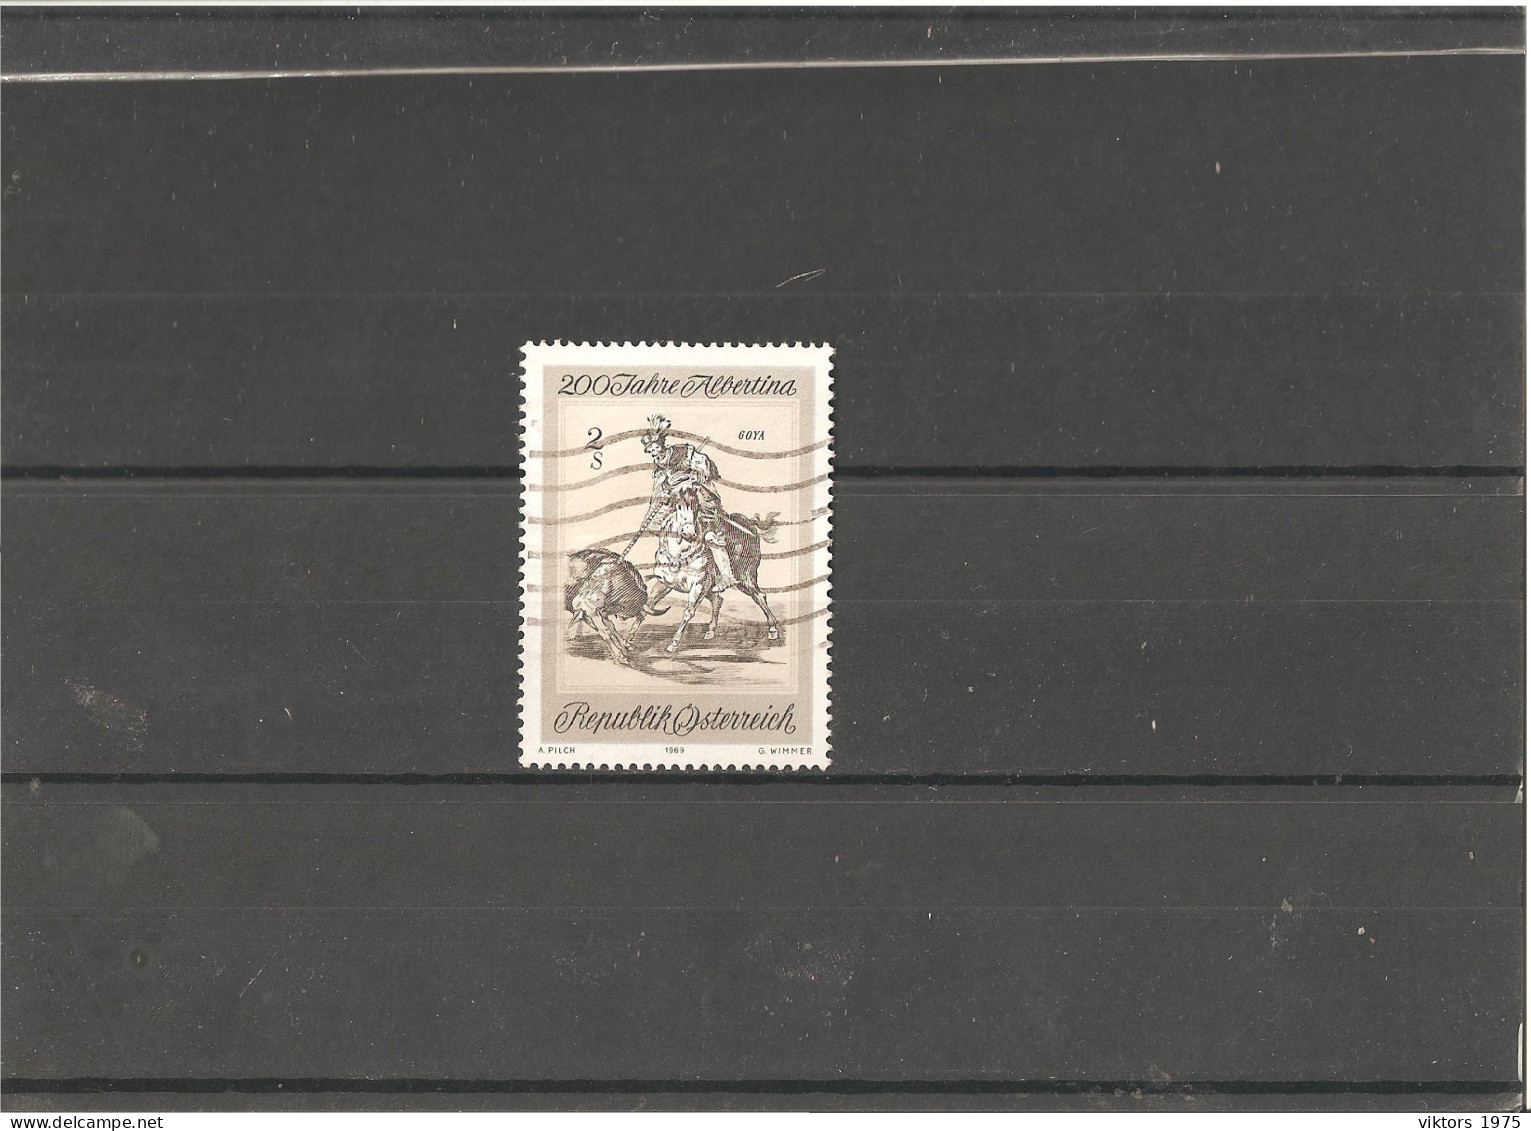 Used Stamp Nr.1307 In MICHEL Catalog - Usati